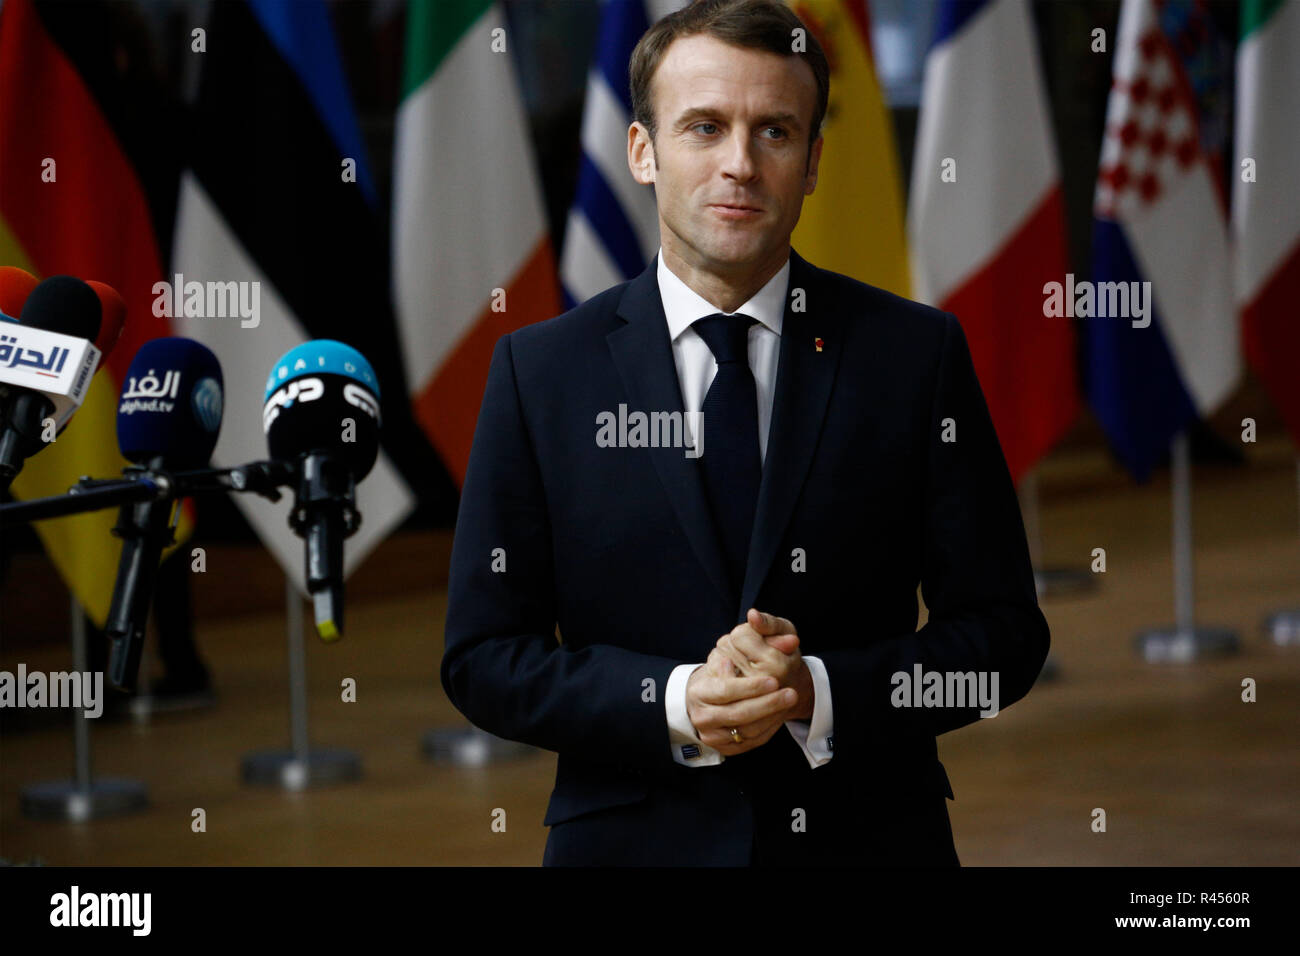 Bruselas, Bélgica. 25 Nov 2018. El presidente francés Emmanuel Macron llega para asistir a una cumbre extraordinaria de líderes de la UE para finalizar y formalizar el acuerdo Brexit. Alexandros Michailidis/Alamy Live News Foto de stock